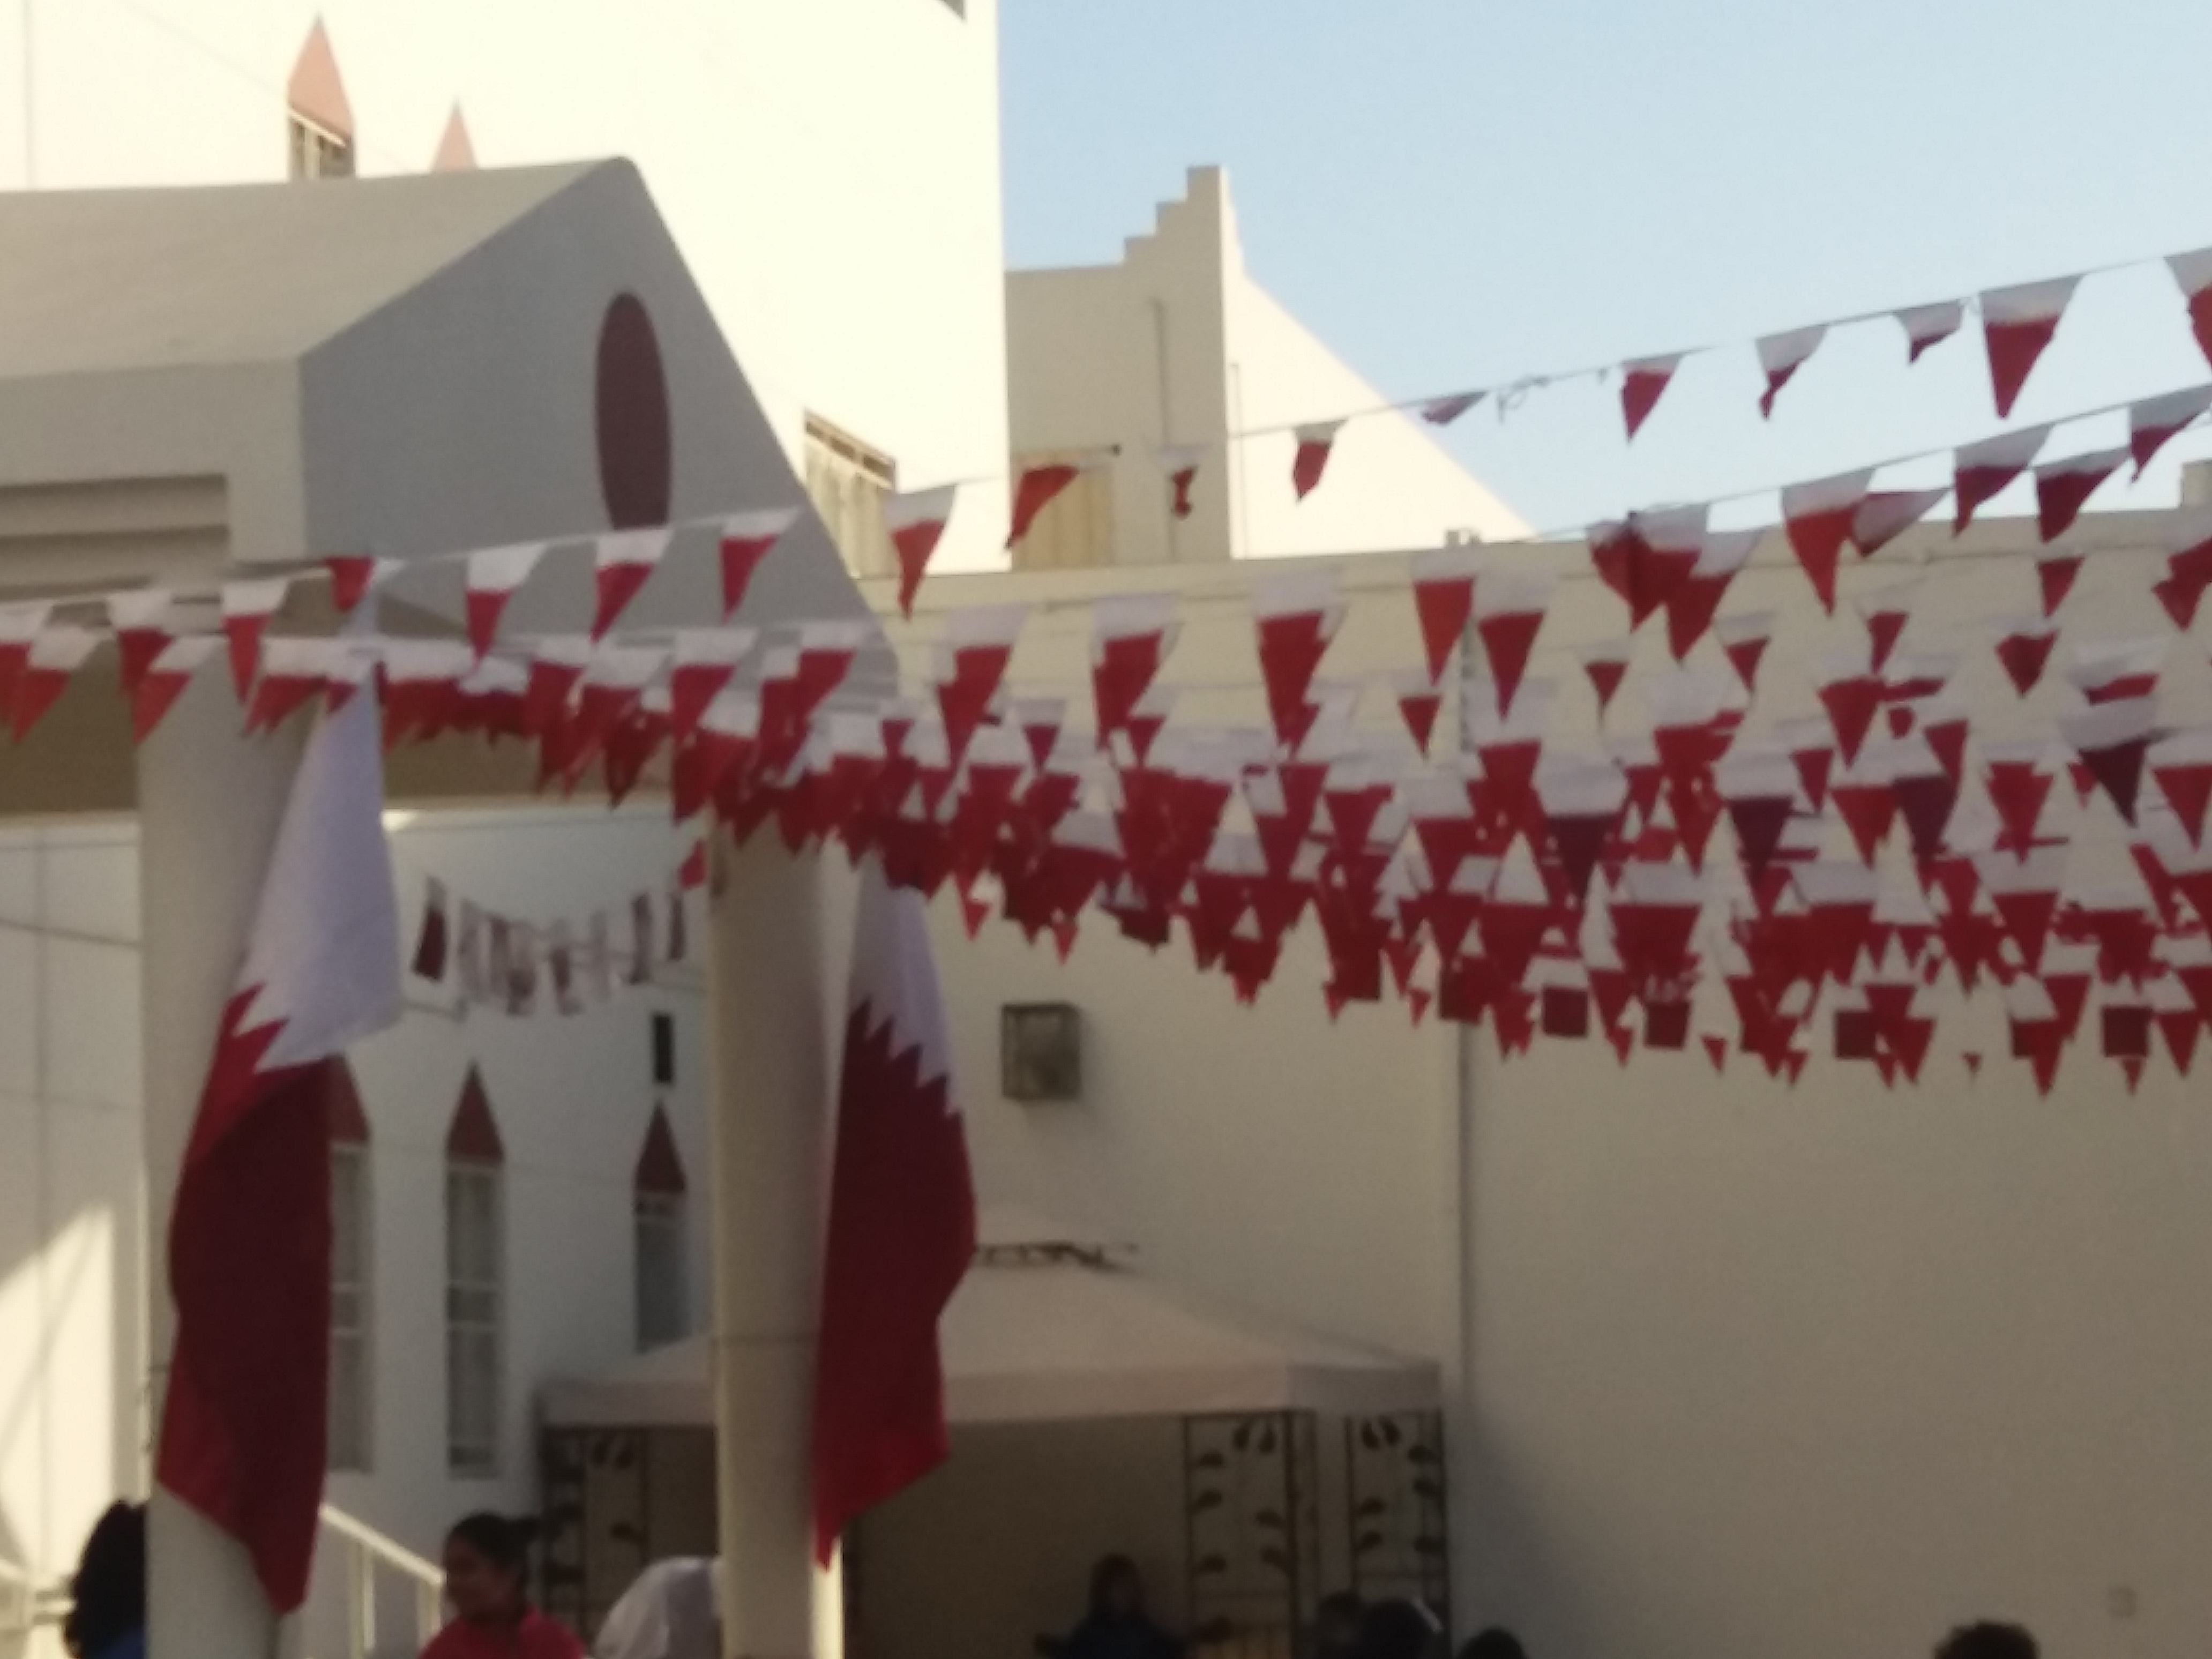 Qatar National Day Celebrations at Blyth Academy Qatar